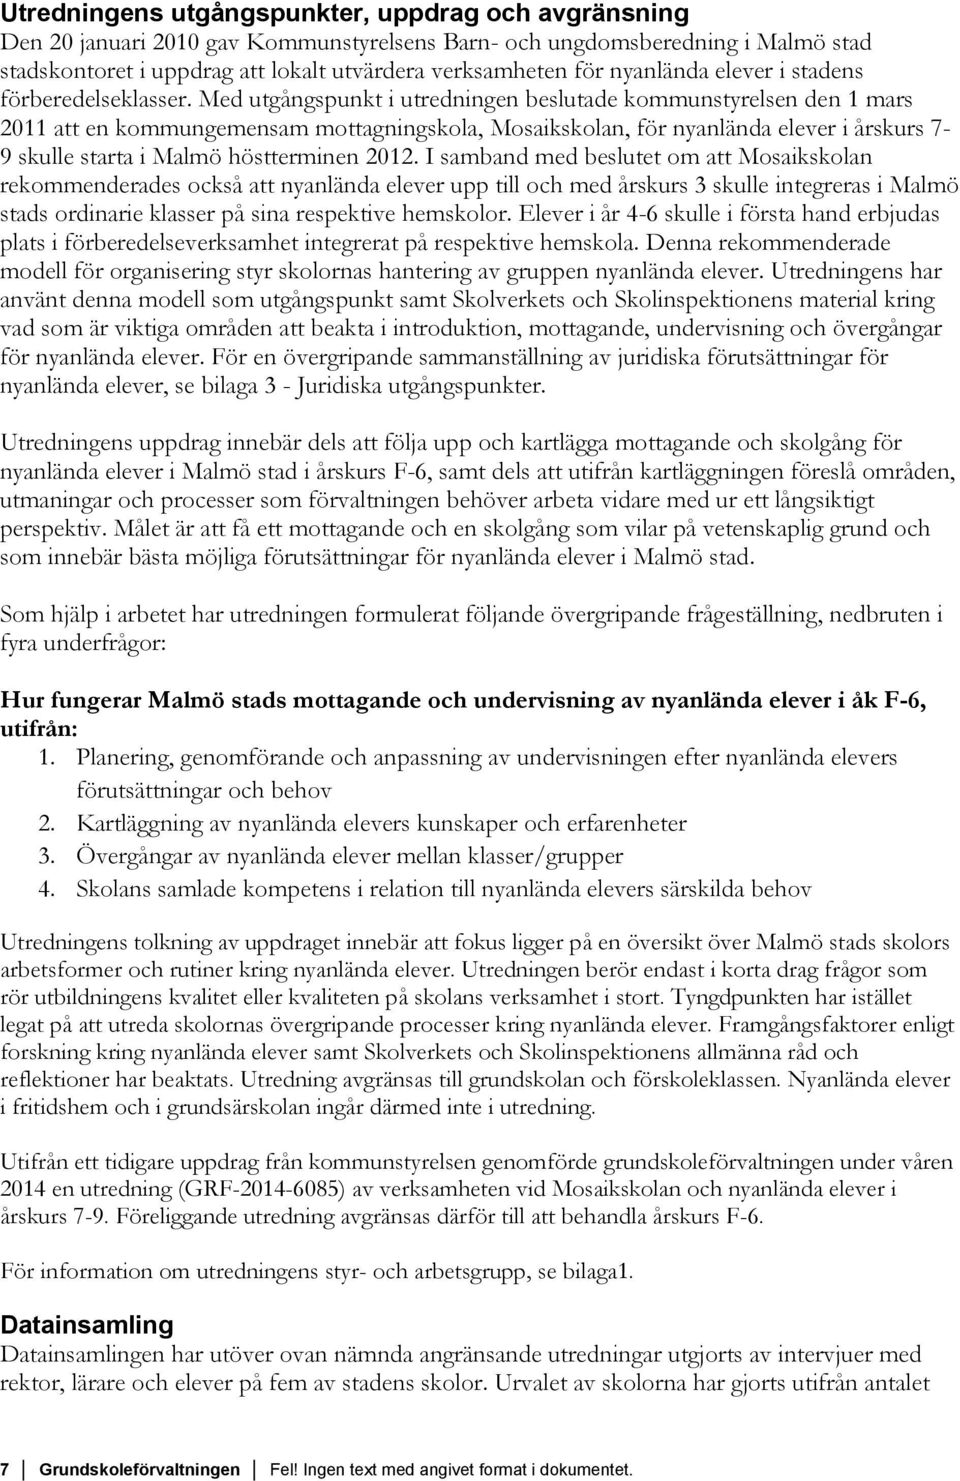 Med utgångspunkt i utredningen beslutade kommunstyrelsen den 1 mars 2011 att en kommungemensam mottagningskola, Mosaikskolan, för nyanlända elever i årskurs 7-9 skulle starta i Malmö höstterminen